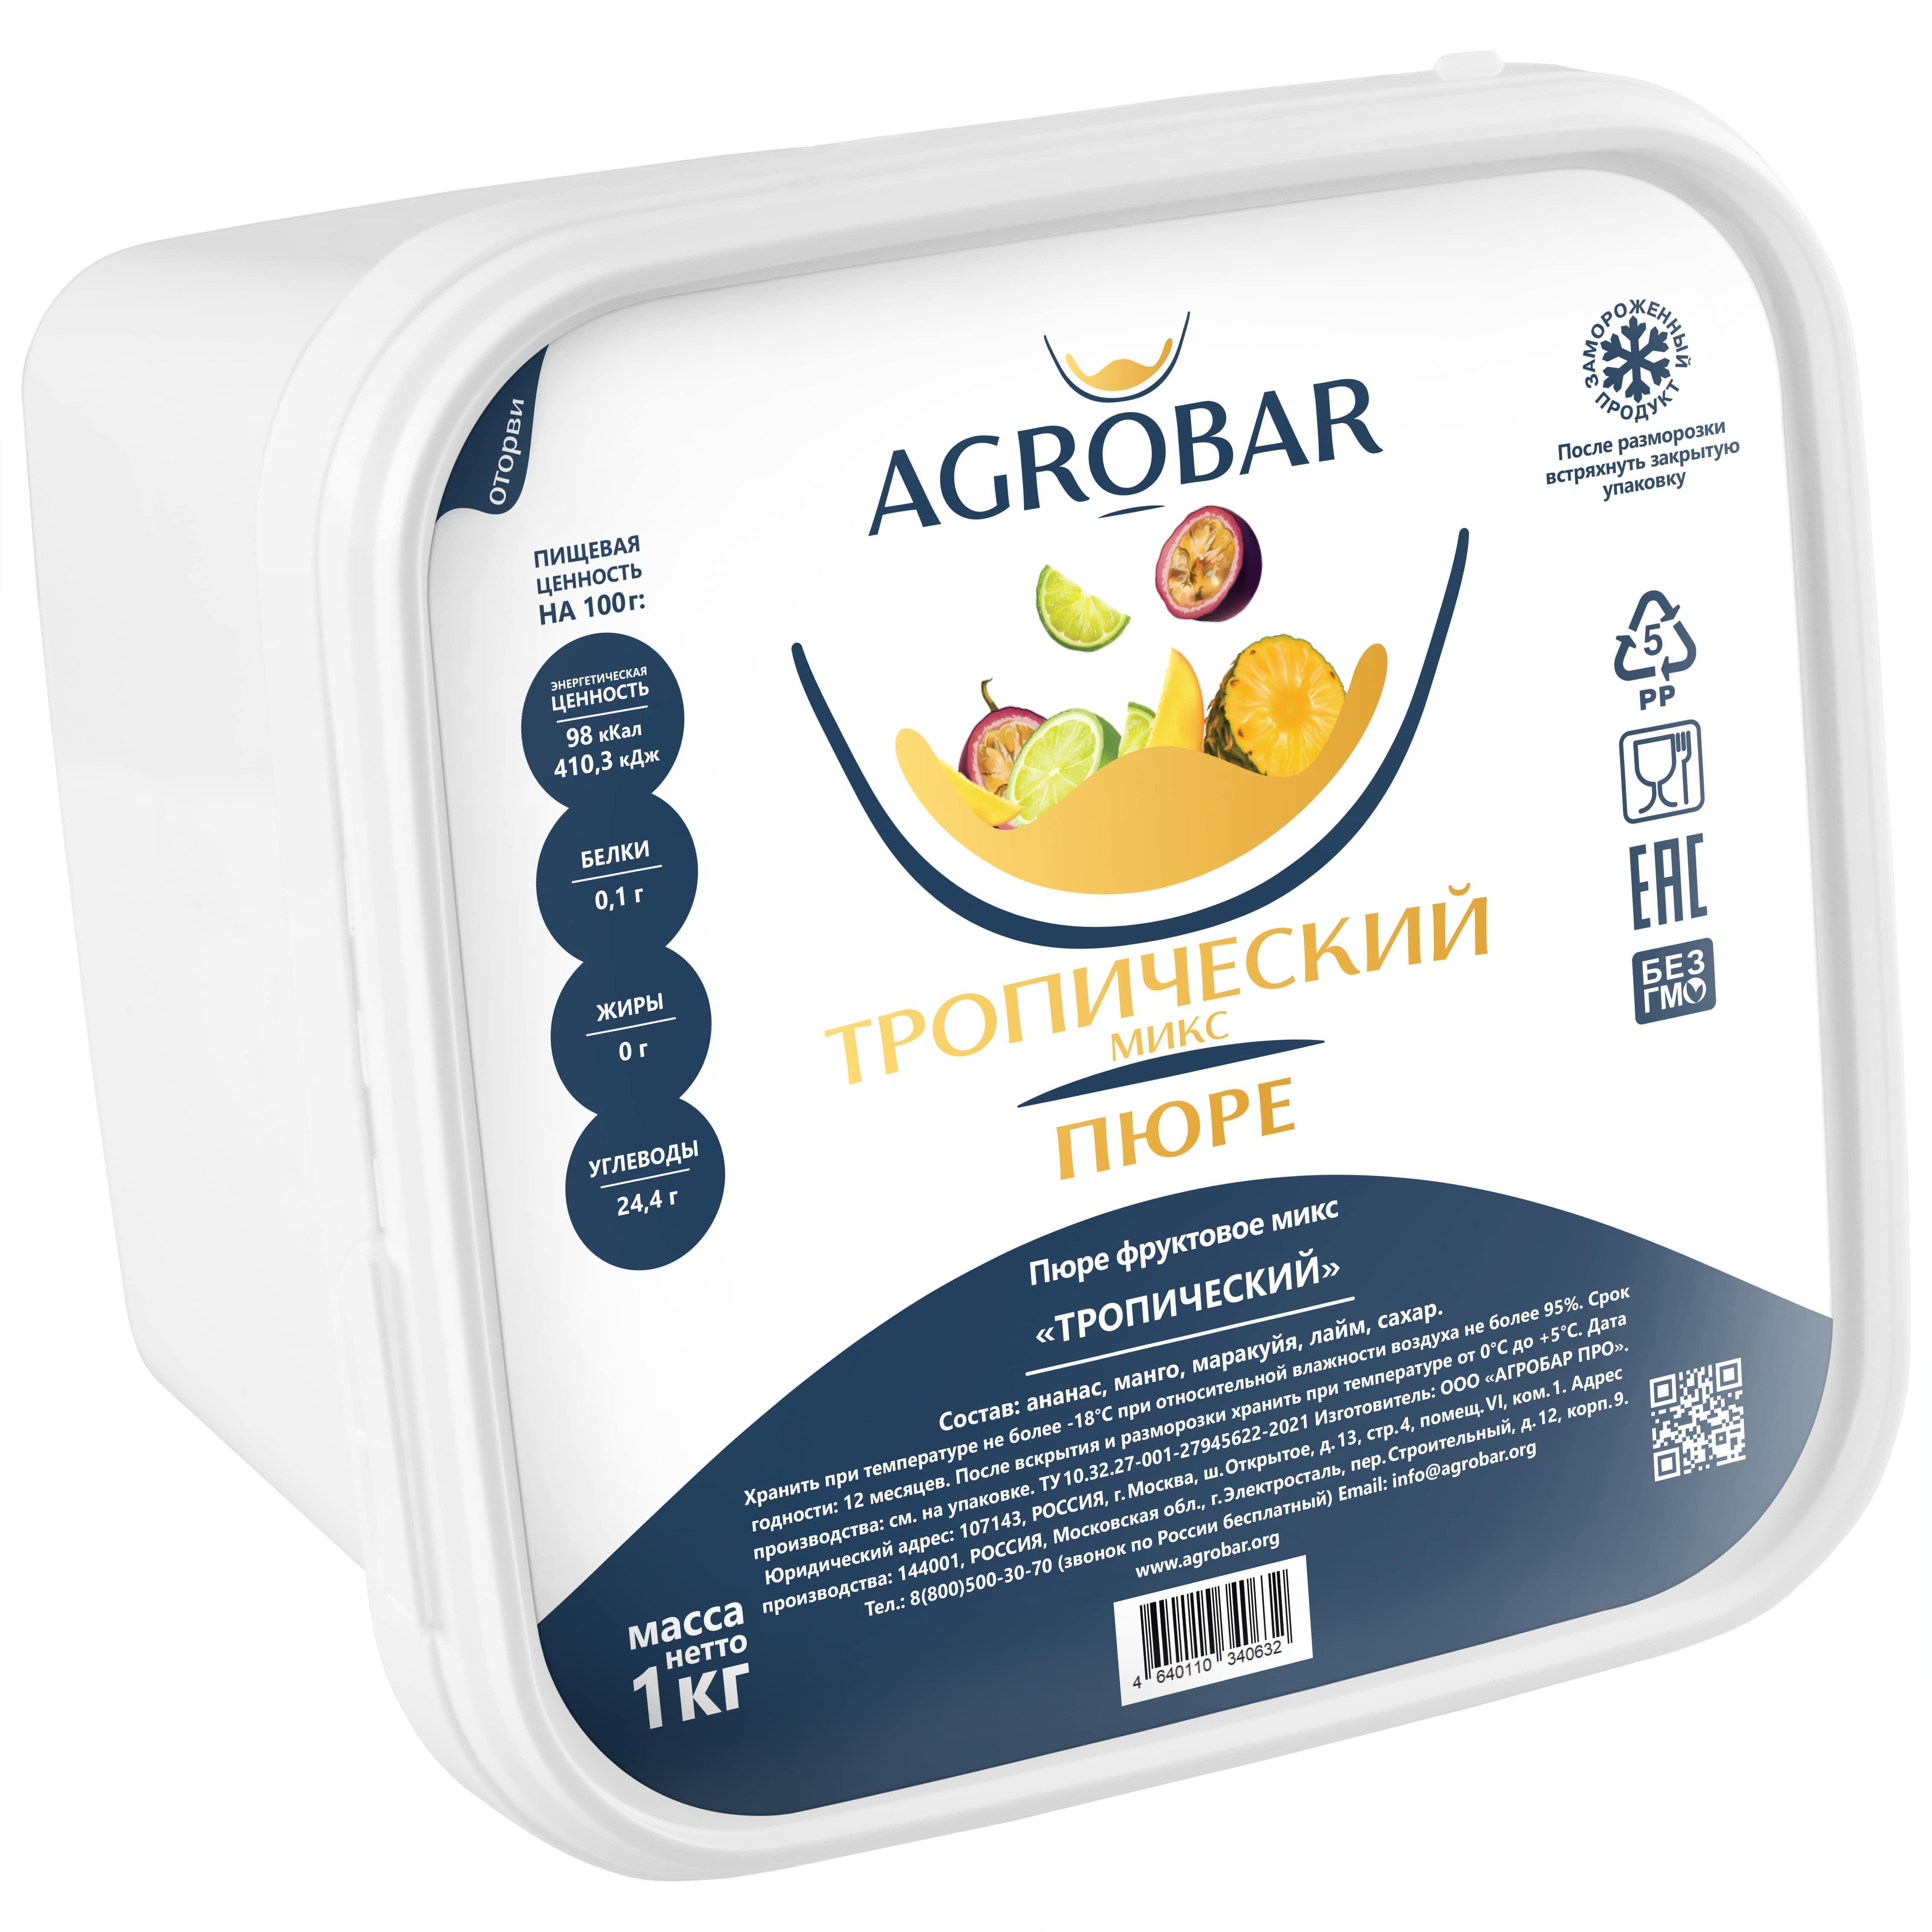 Пюре AGROBAR  Тропический микс 1 кг., пластиковый контейнер